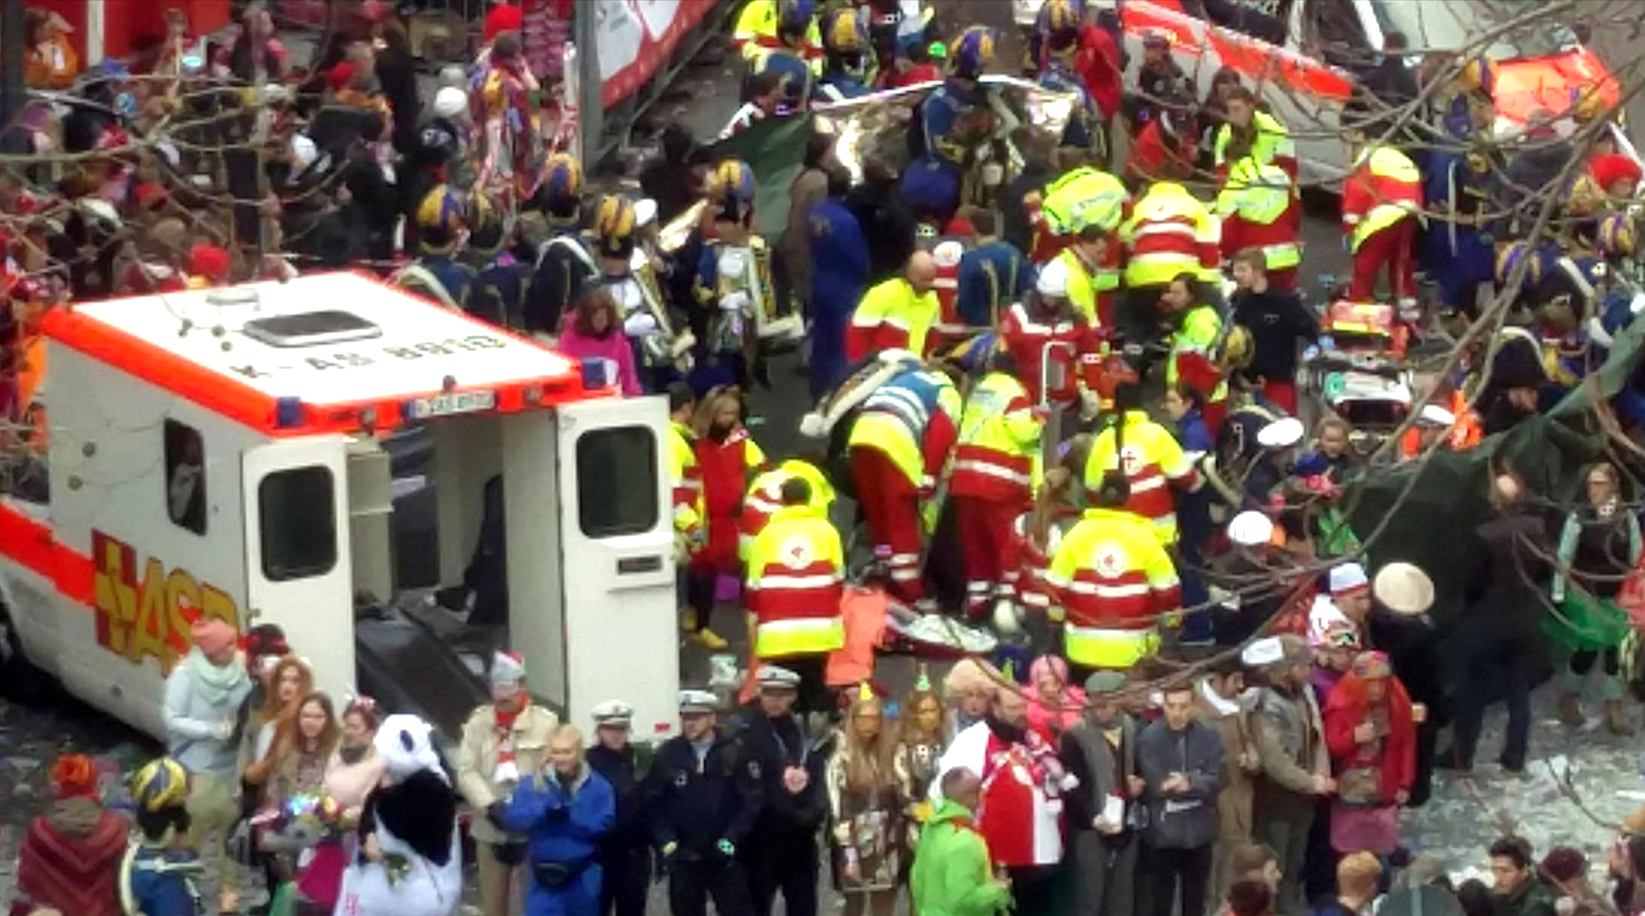 Eilmeldung! Autofahrer rast in Menschenmenge und flüchtet - Insgesamt 17 Personen verletzt